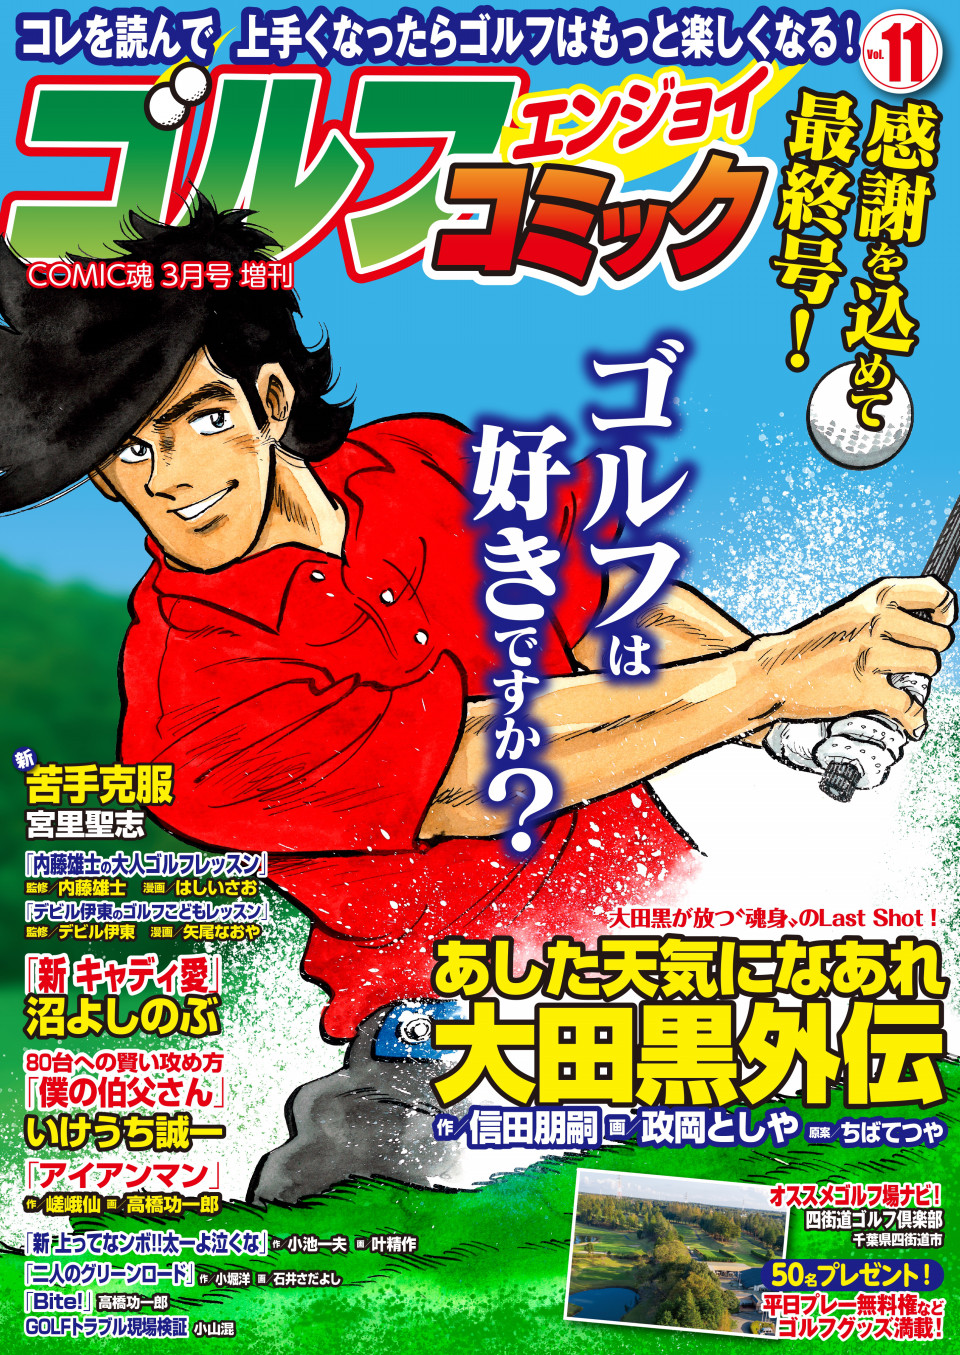 Comic魂年3月号増刊 ゴルフエンジョイコミック Vol 11 年1月31日発売 はちどり 本の企画 編集から Comic魂 女子ごはんなどの本の出版まで